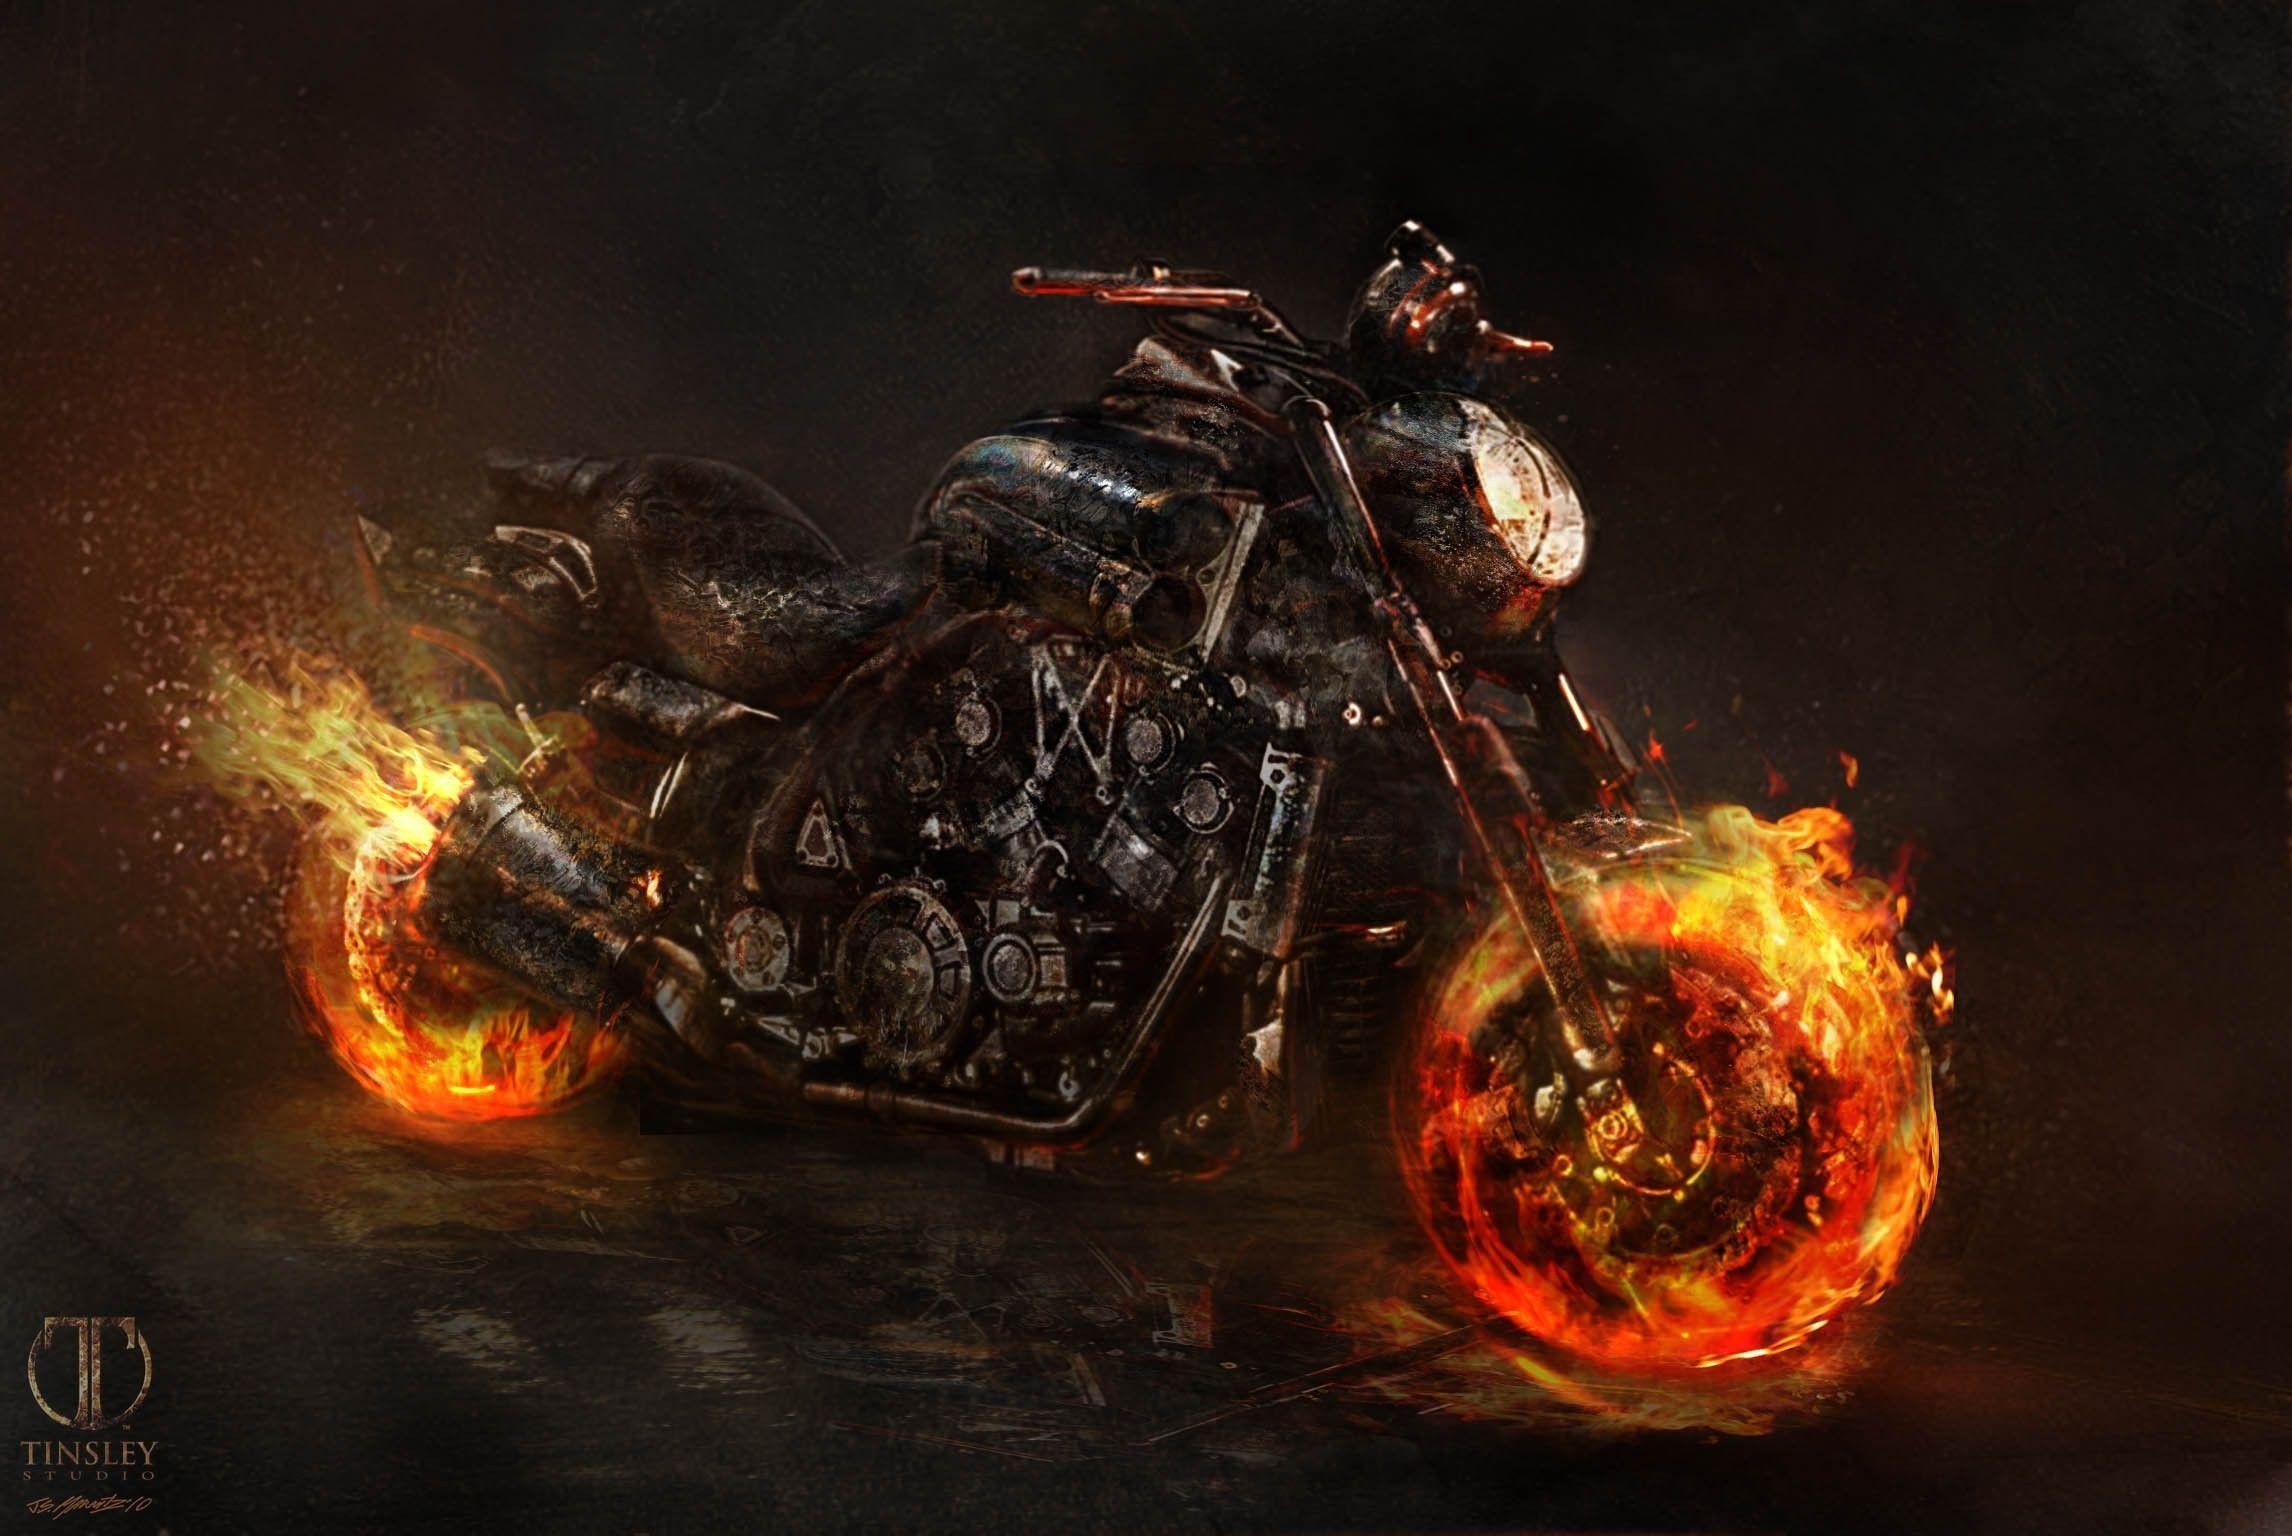 moto do motoqueiro fantasma 2